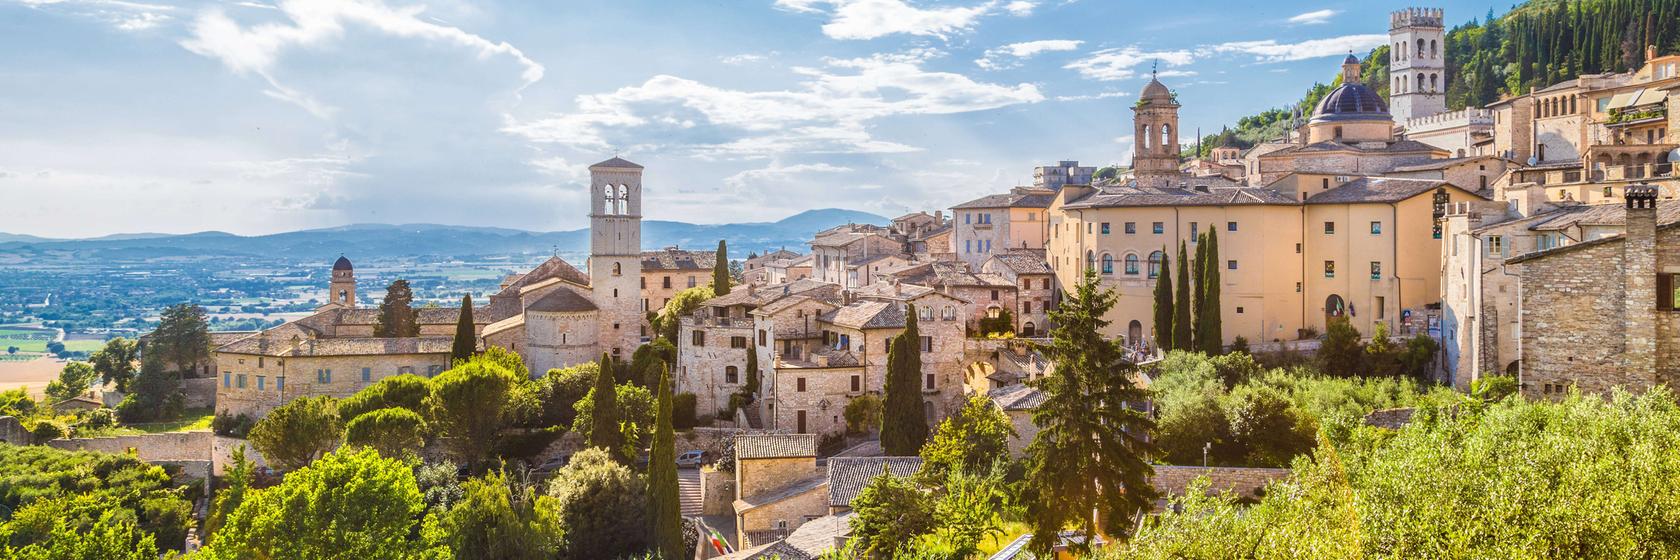 Ubytování Assisi